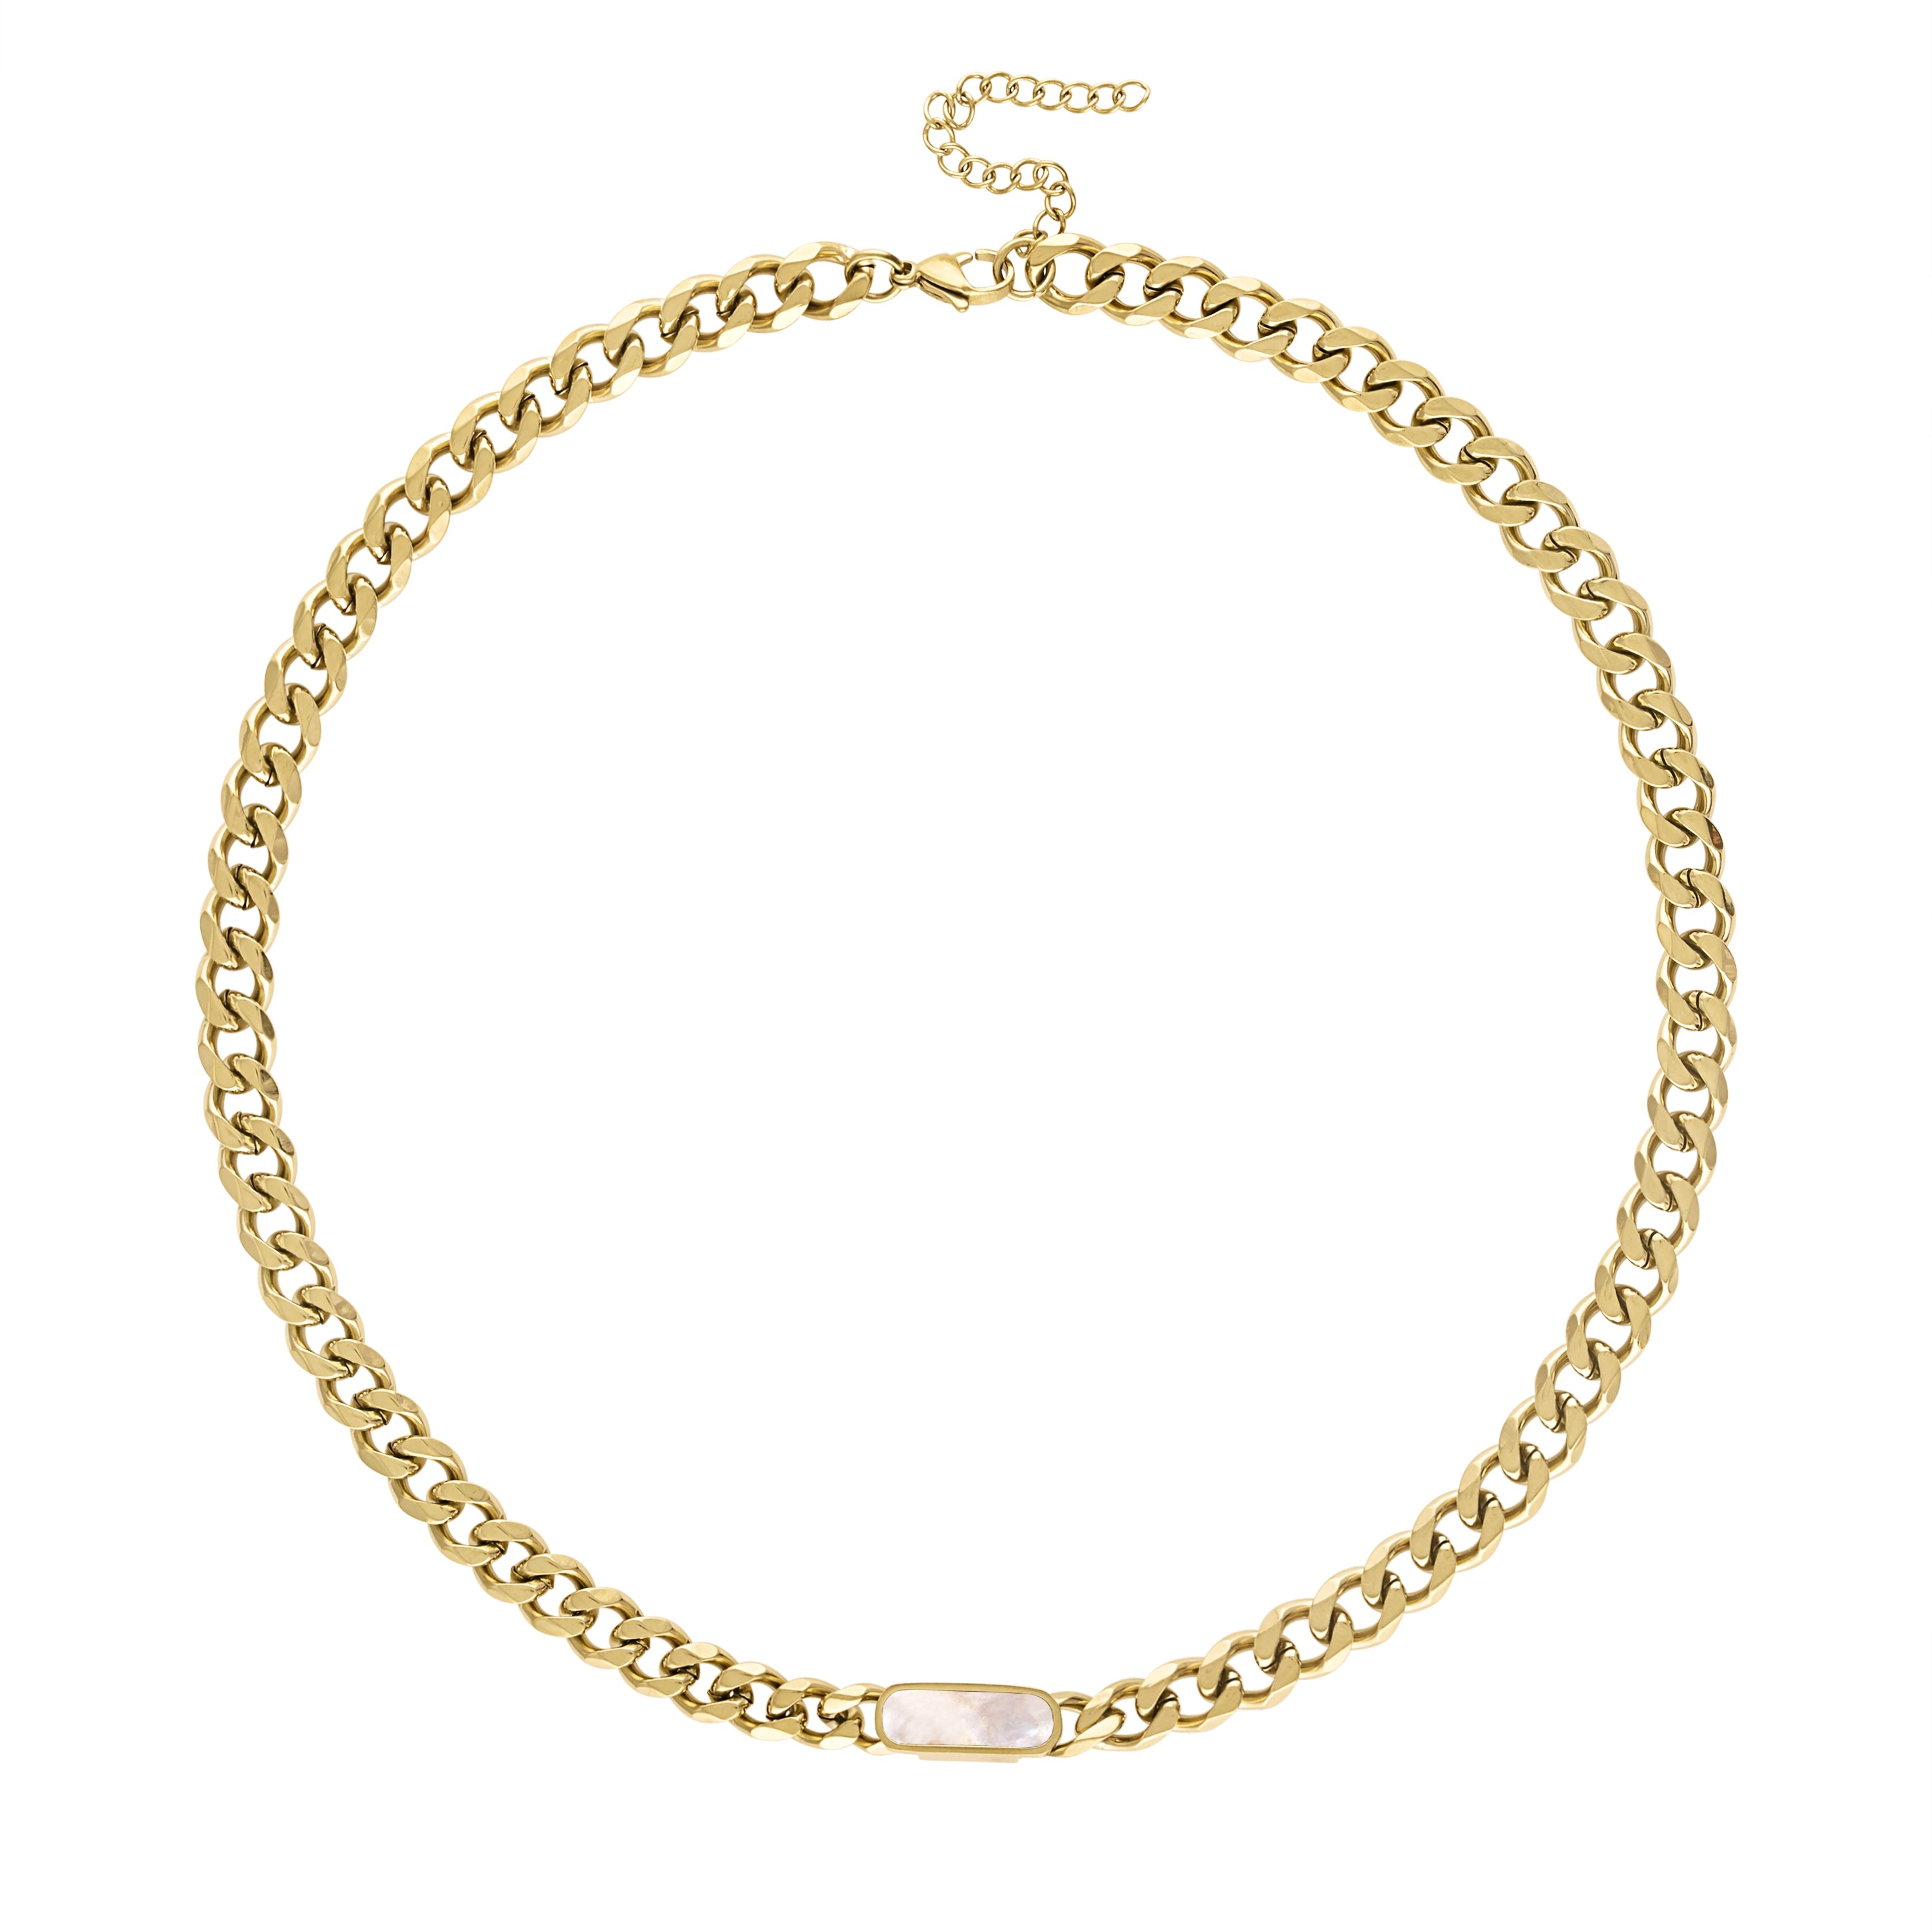 Shop Olivia Le Women's Tessa Cuban Chain Necklace - White